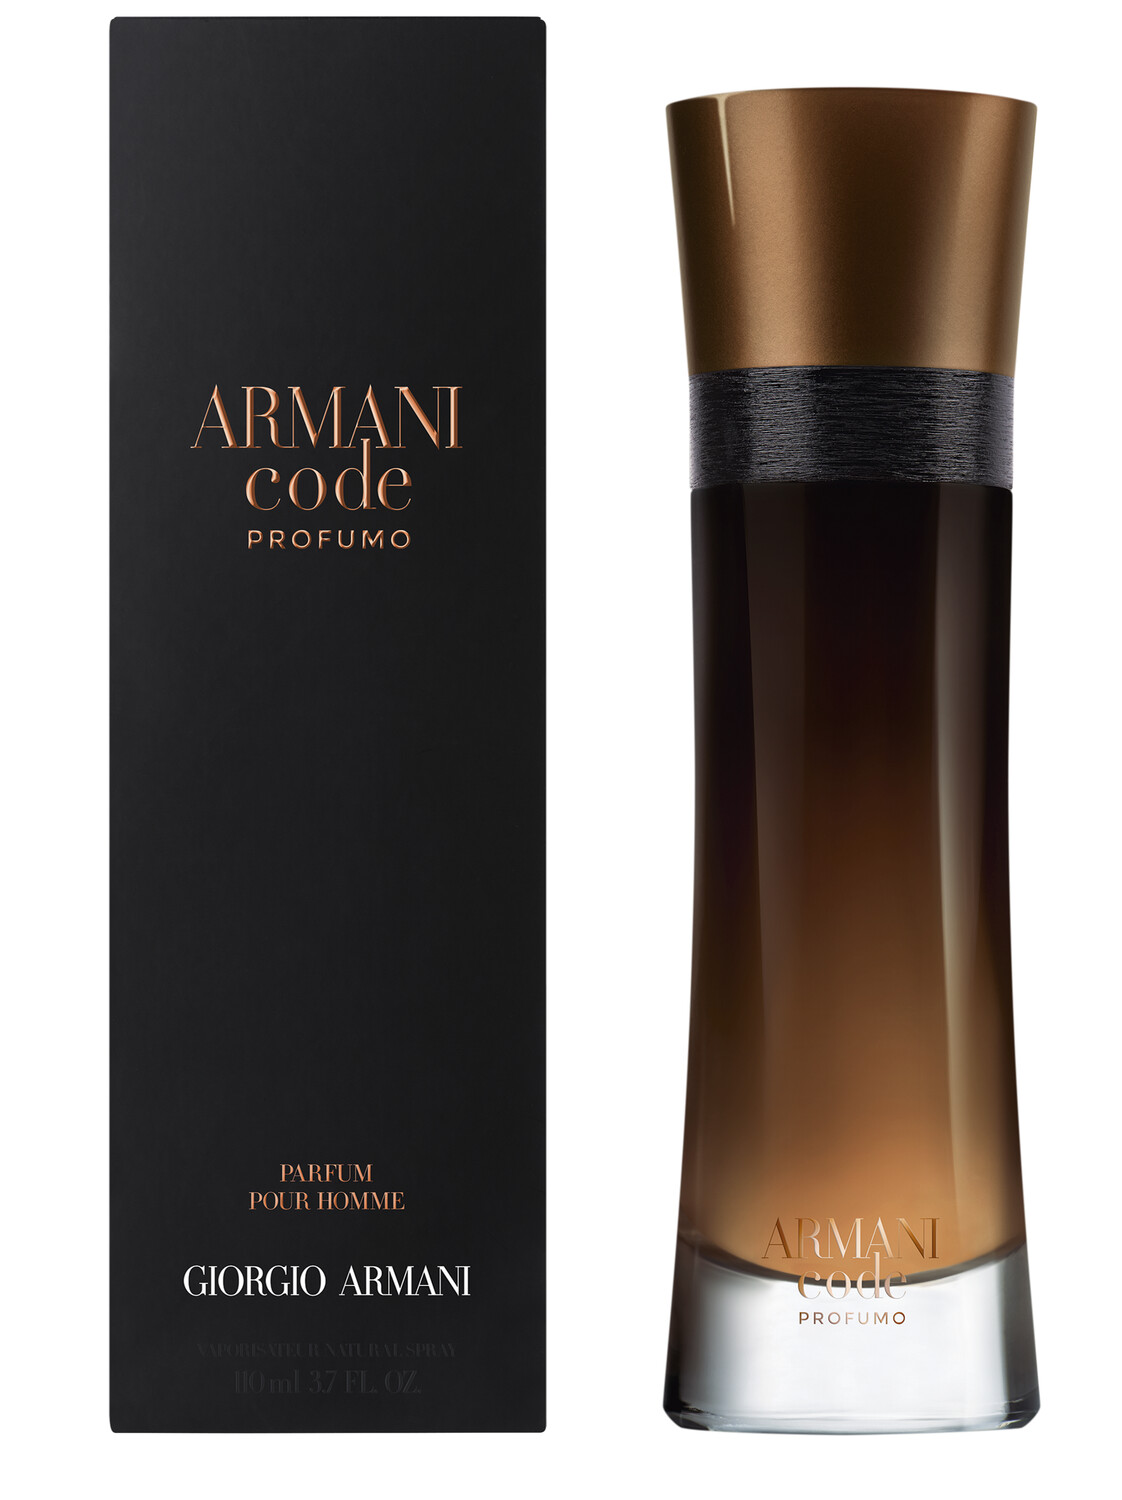 Armani Code Profumo - Giorgio Armani